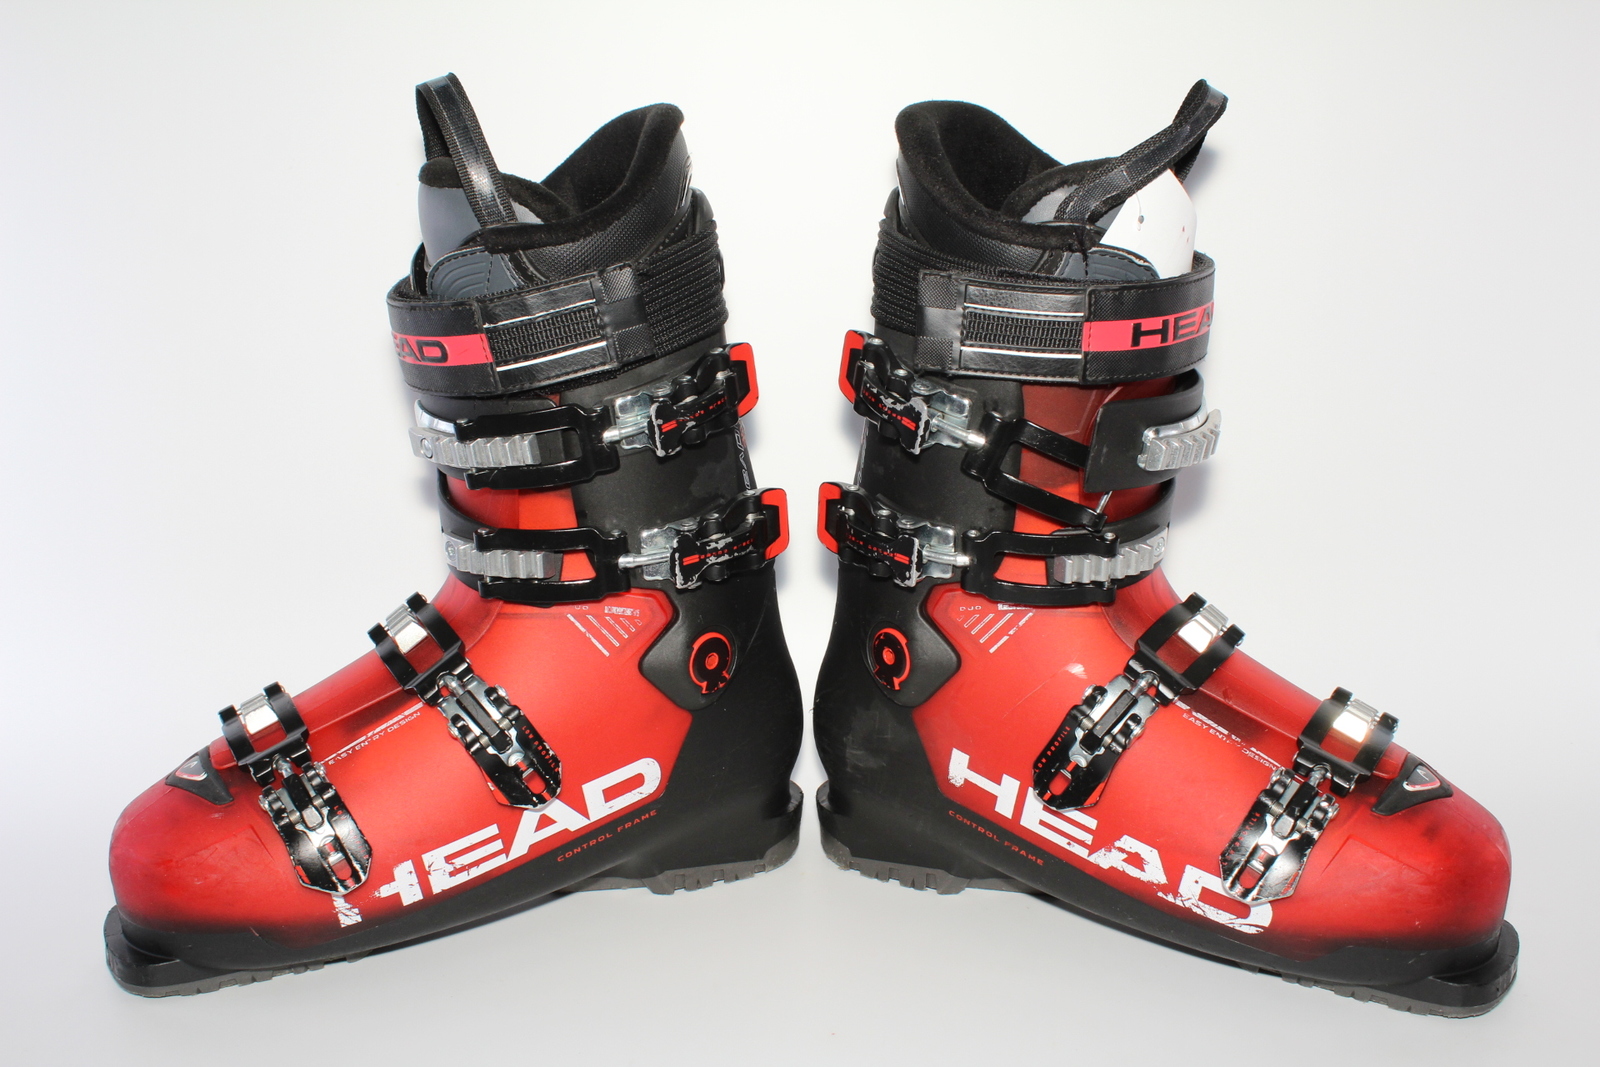 Lyžařské boty Head Advant Edge 95 vel. EU43.5 flexe 95